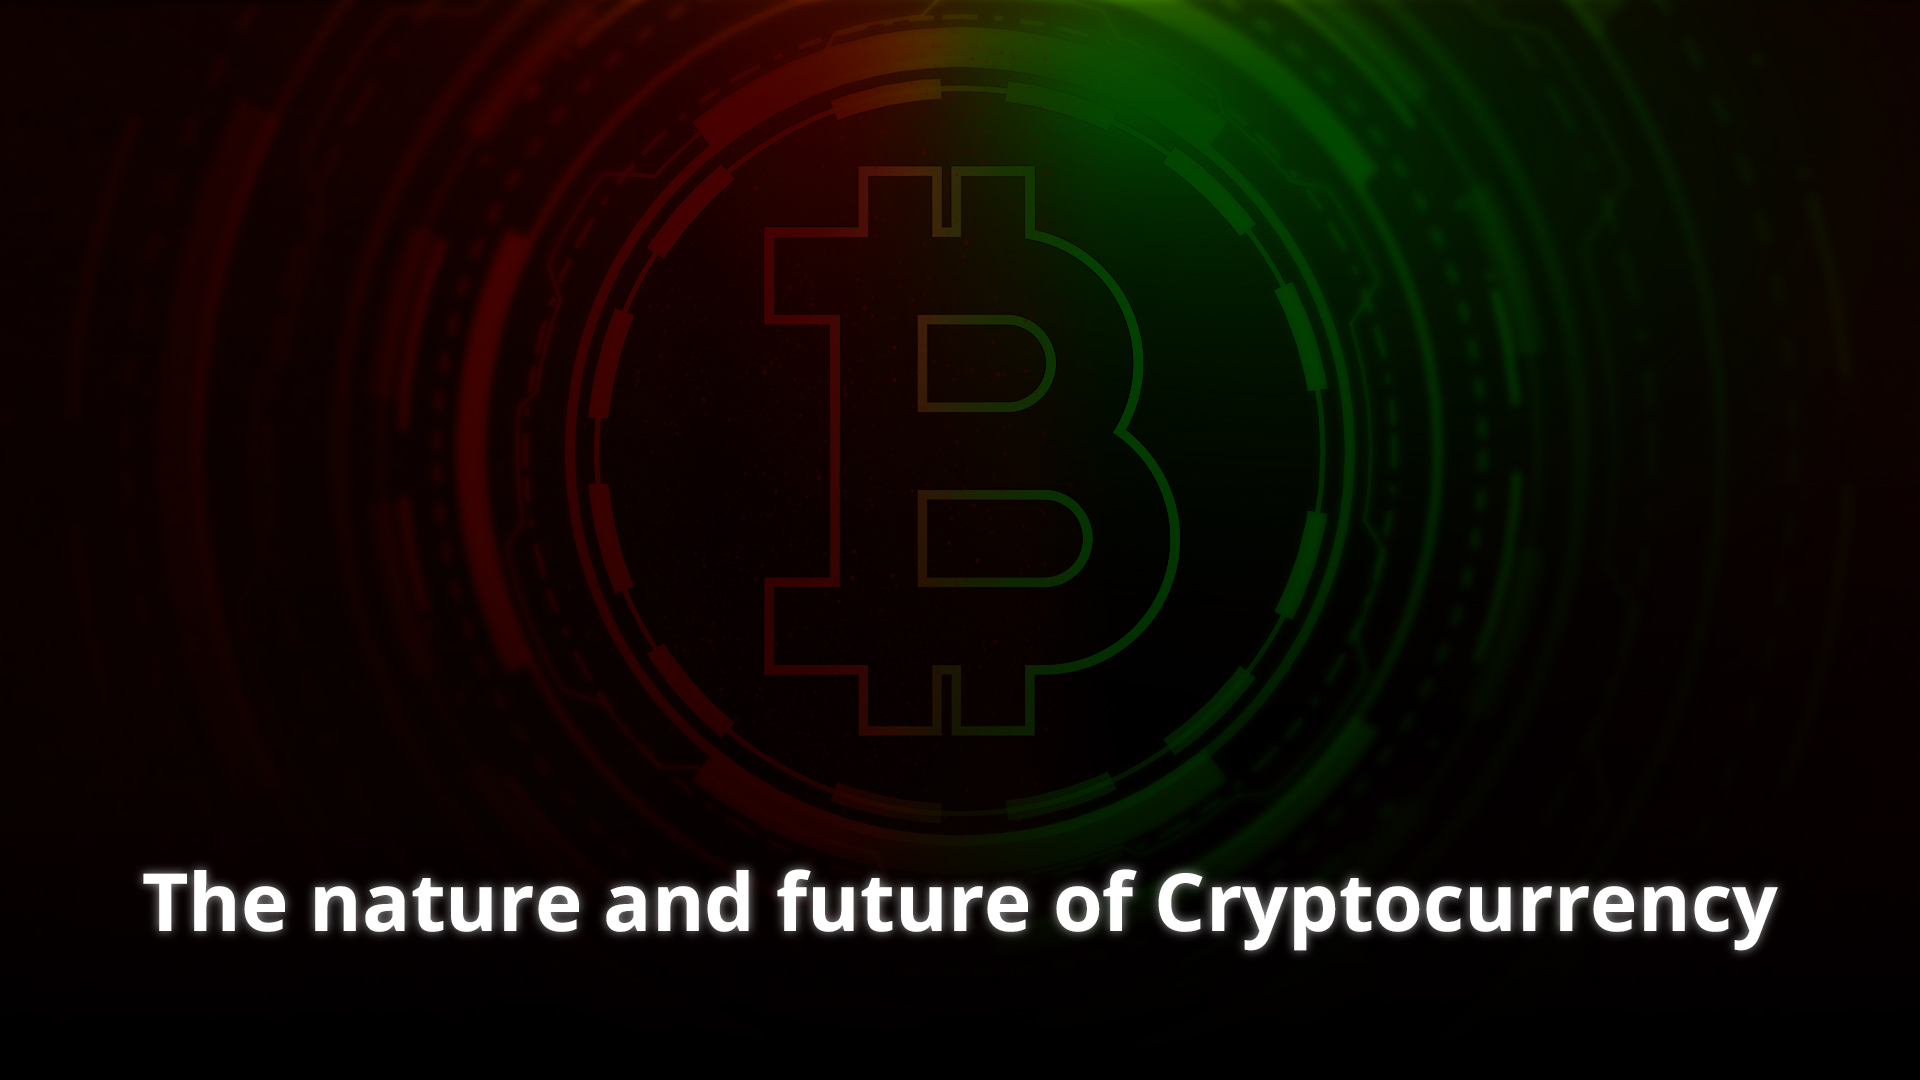 Das Wesen und die Zukunft der Kryptowährung